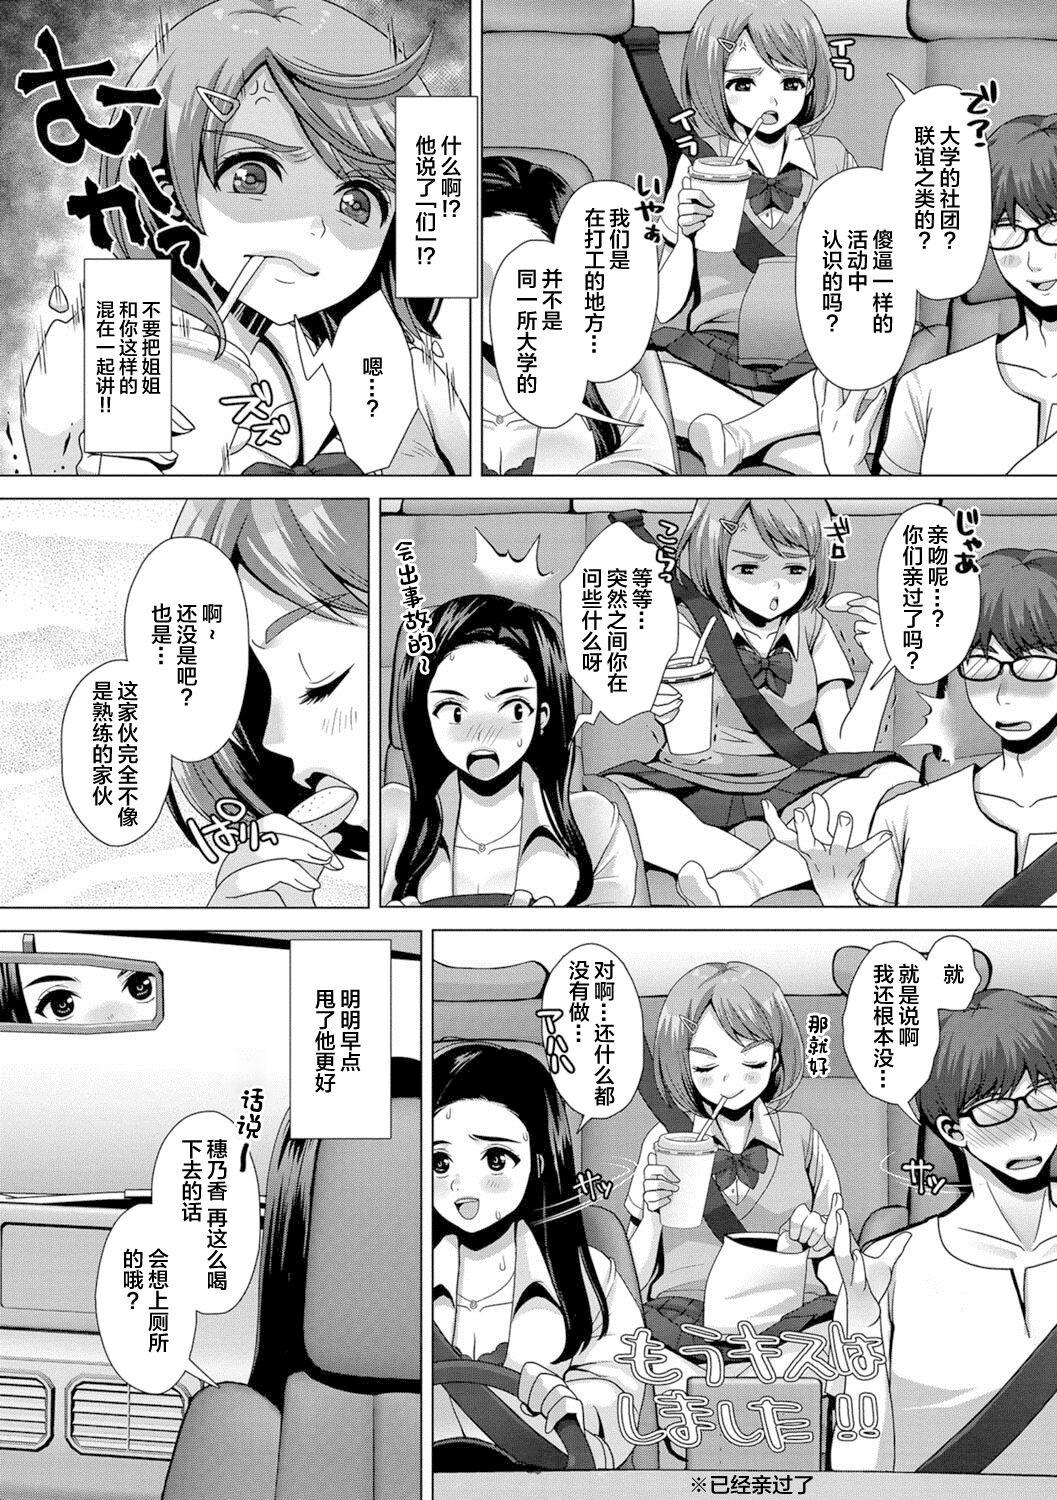 Tinder Oshikko ☆ Dechau!! for Digital Vol.1 - Original Exibicionismo - Page 4